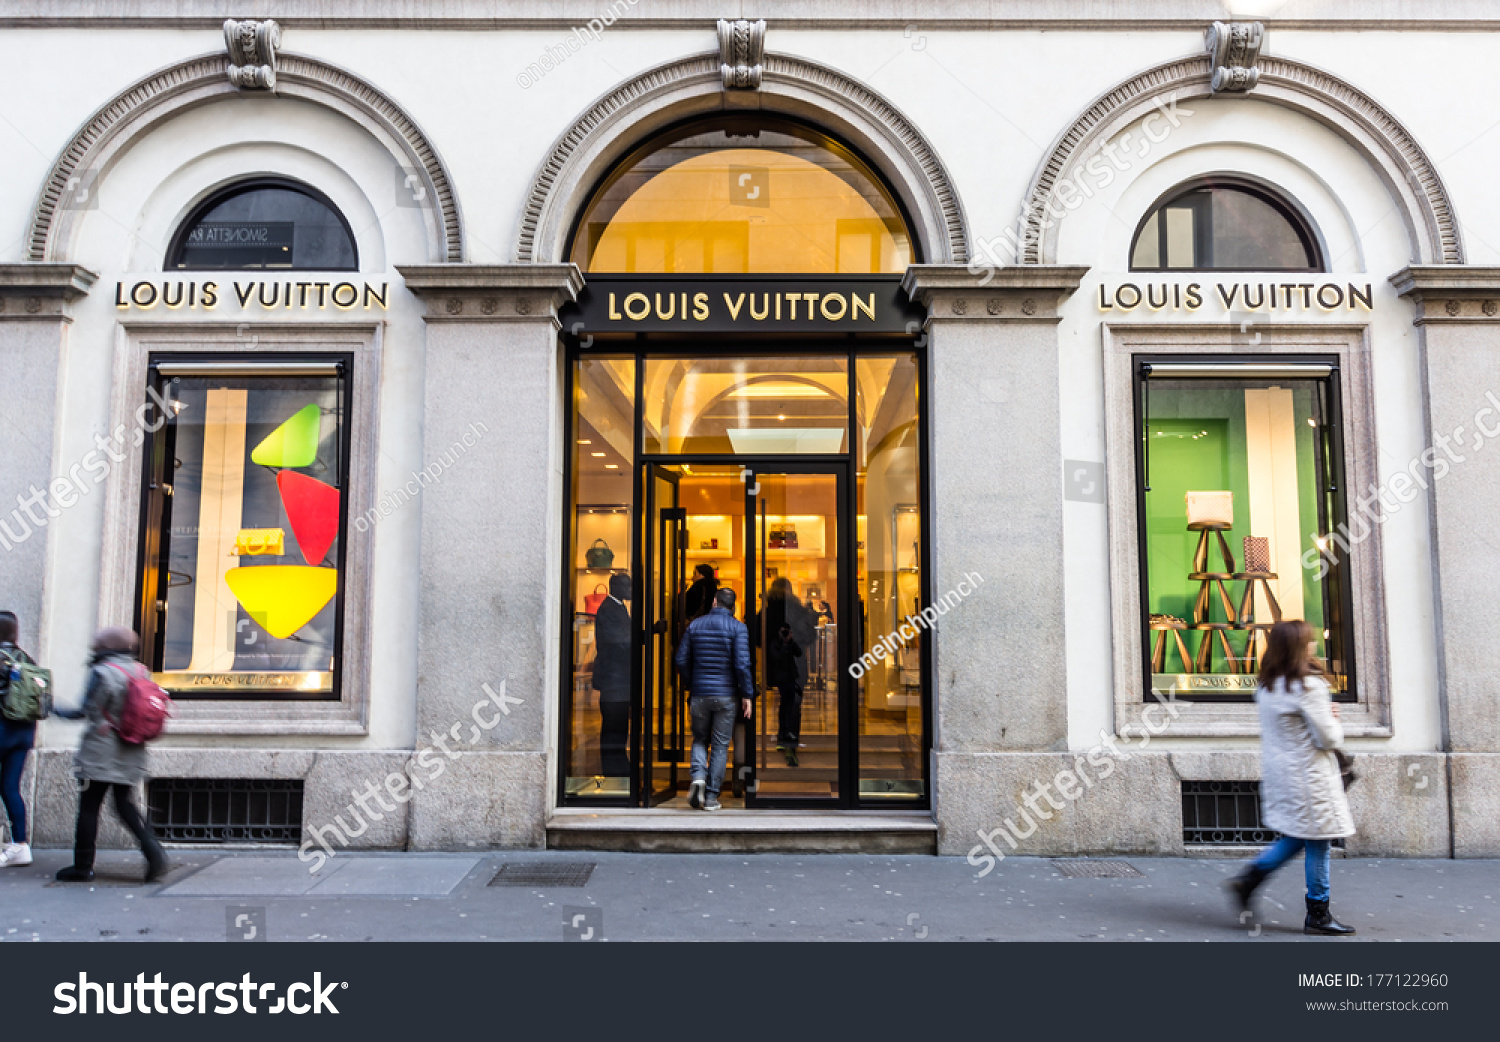 Milanovia Montenapoleoneit February 22014 Louis Vuitton Stock Photo 177122960 - Shutterstock